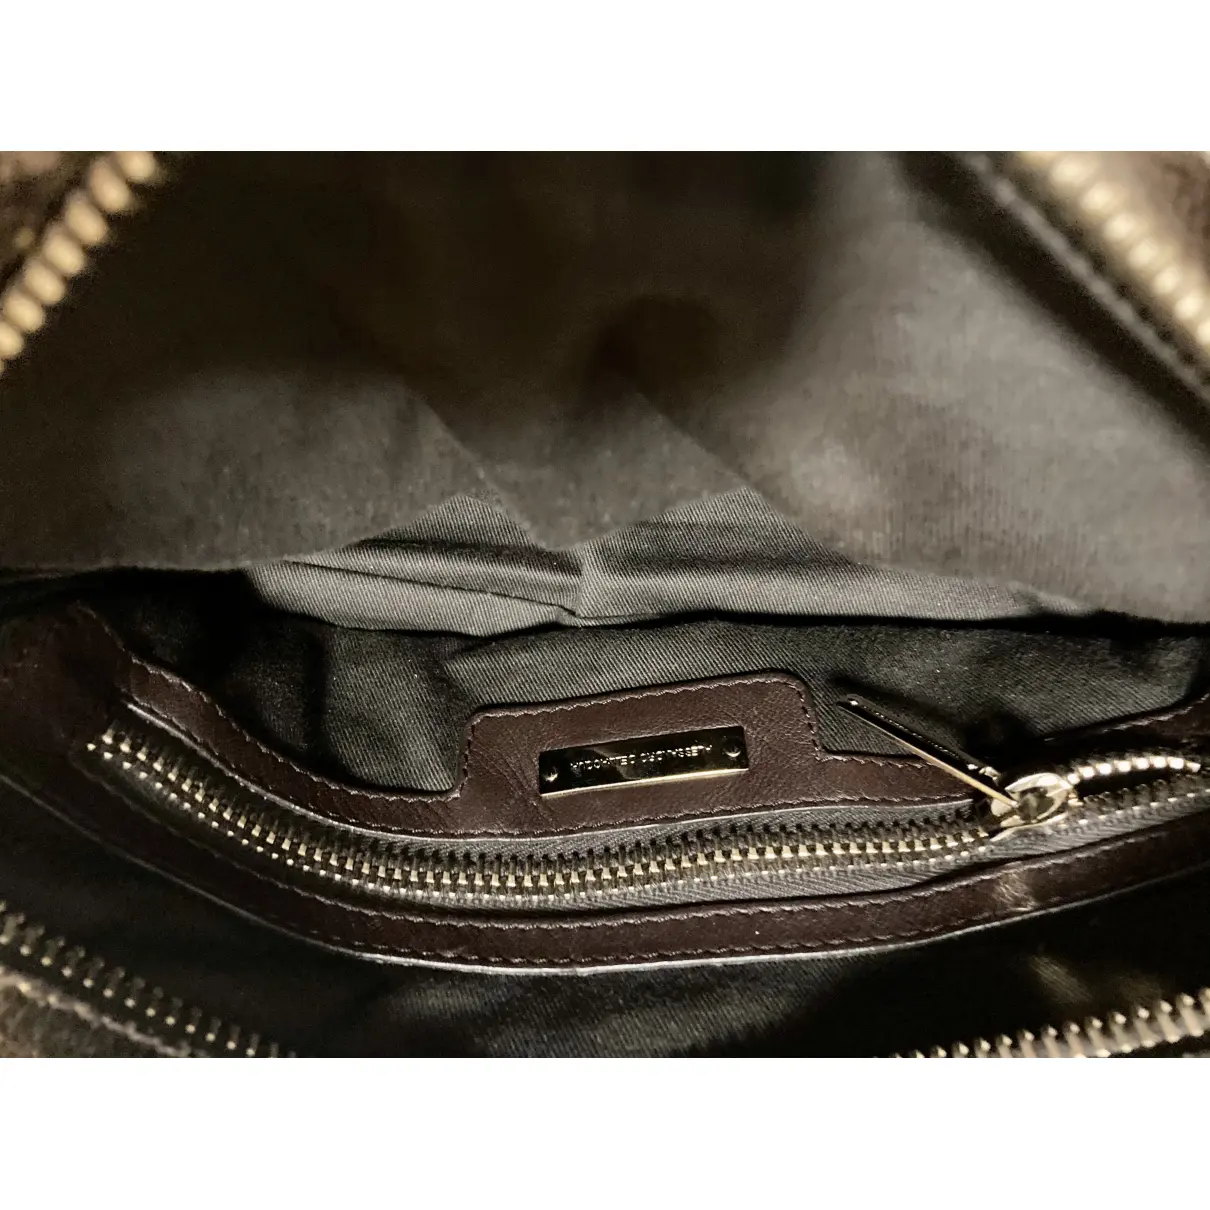 Leather handbag Alessandro Dell'Acqua